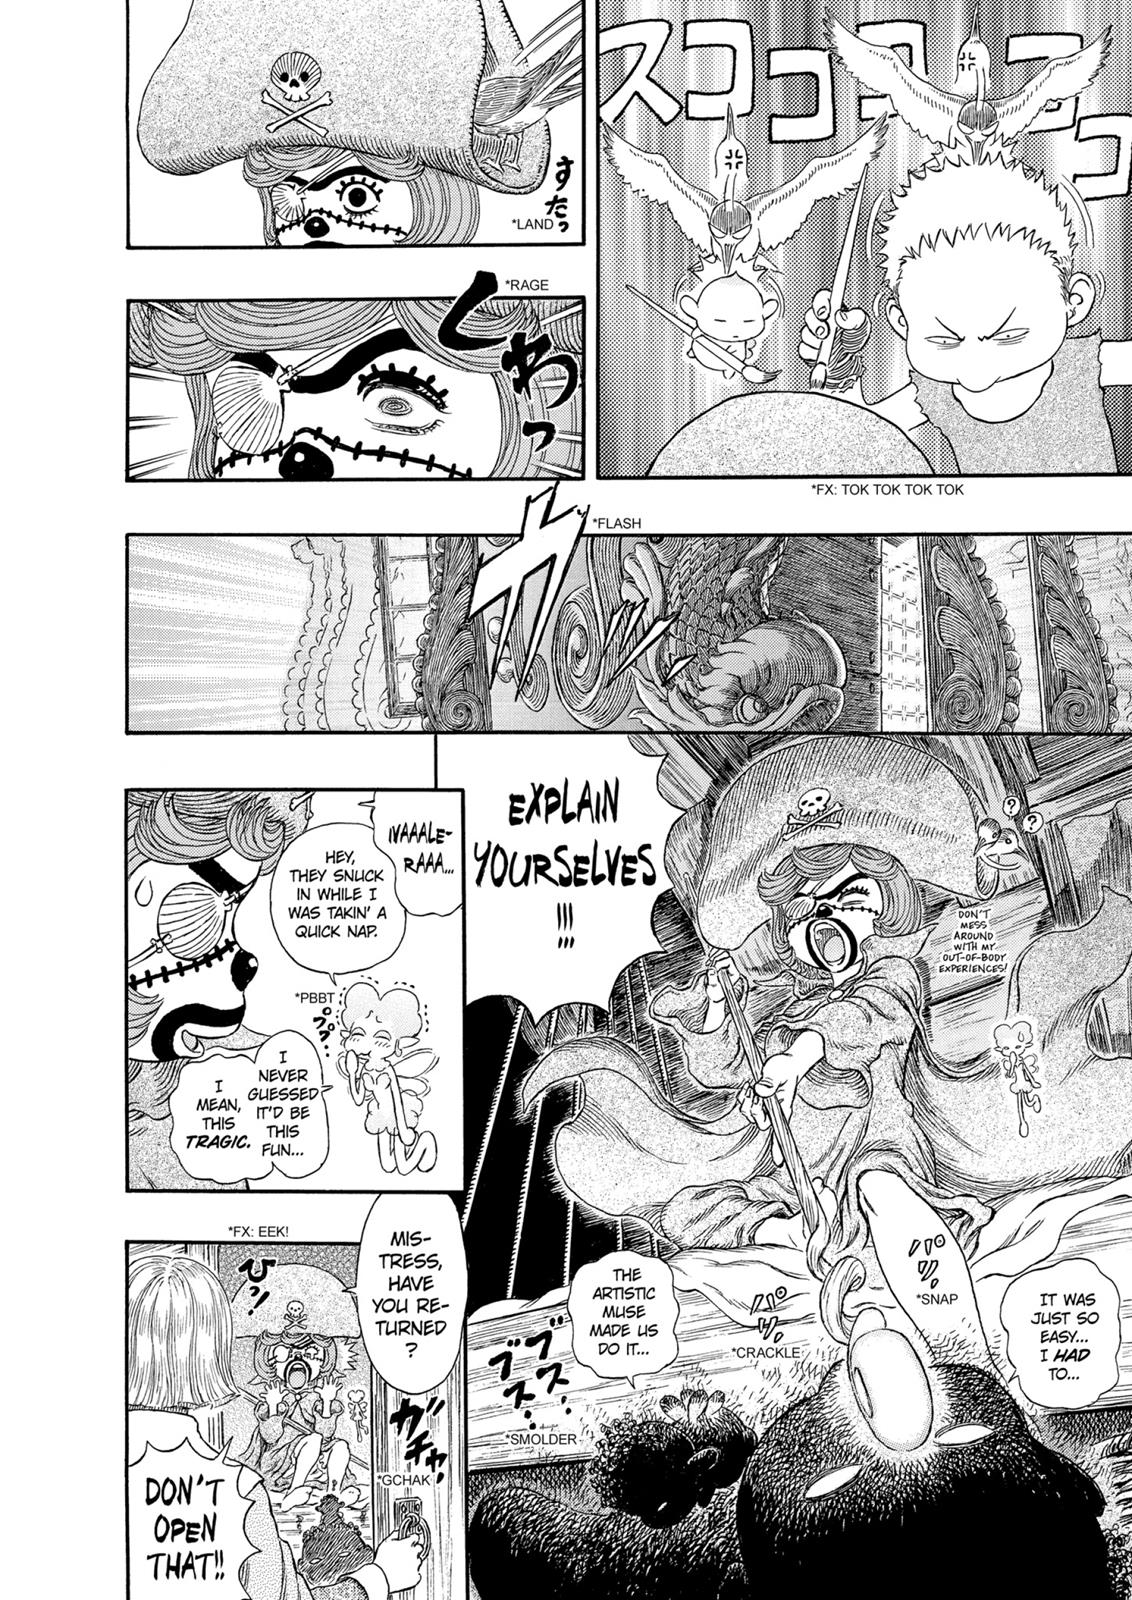 Berserk Manga Chapter 308 image 11